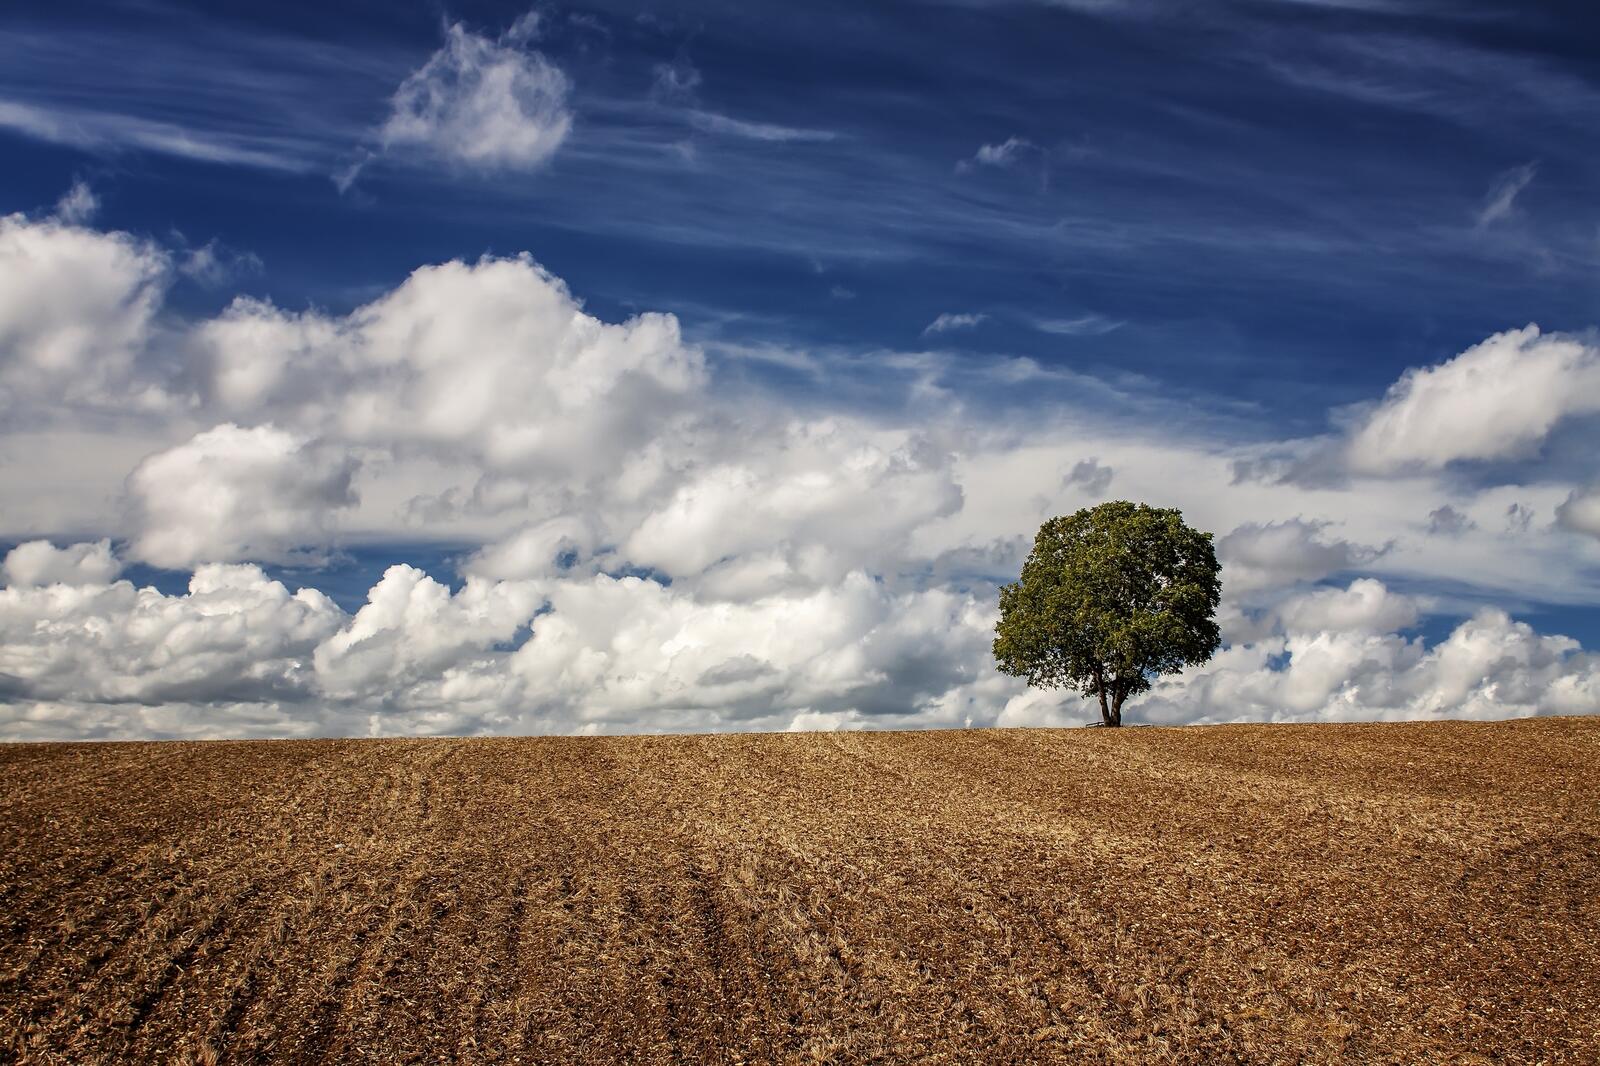 免费照片田野里的一棵孤树和天空中的羽毛状云朵